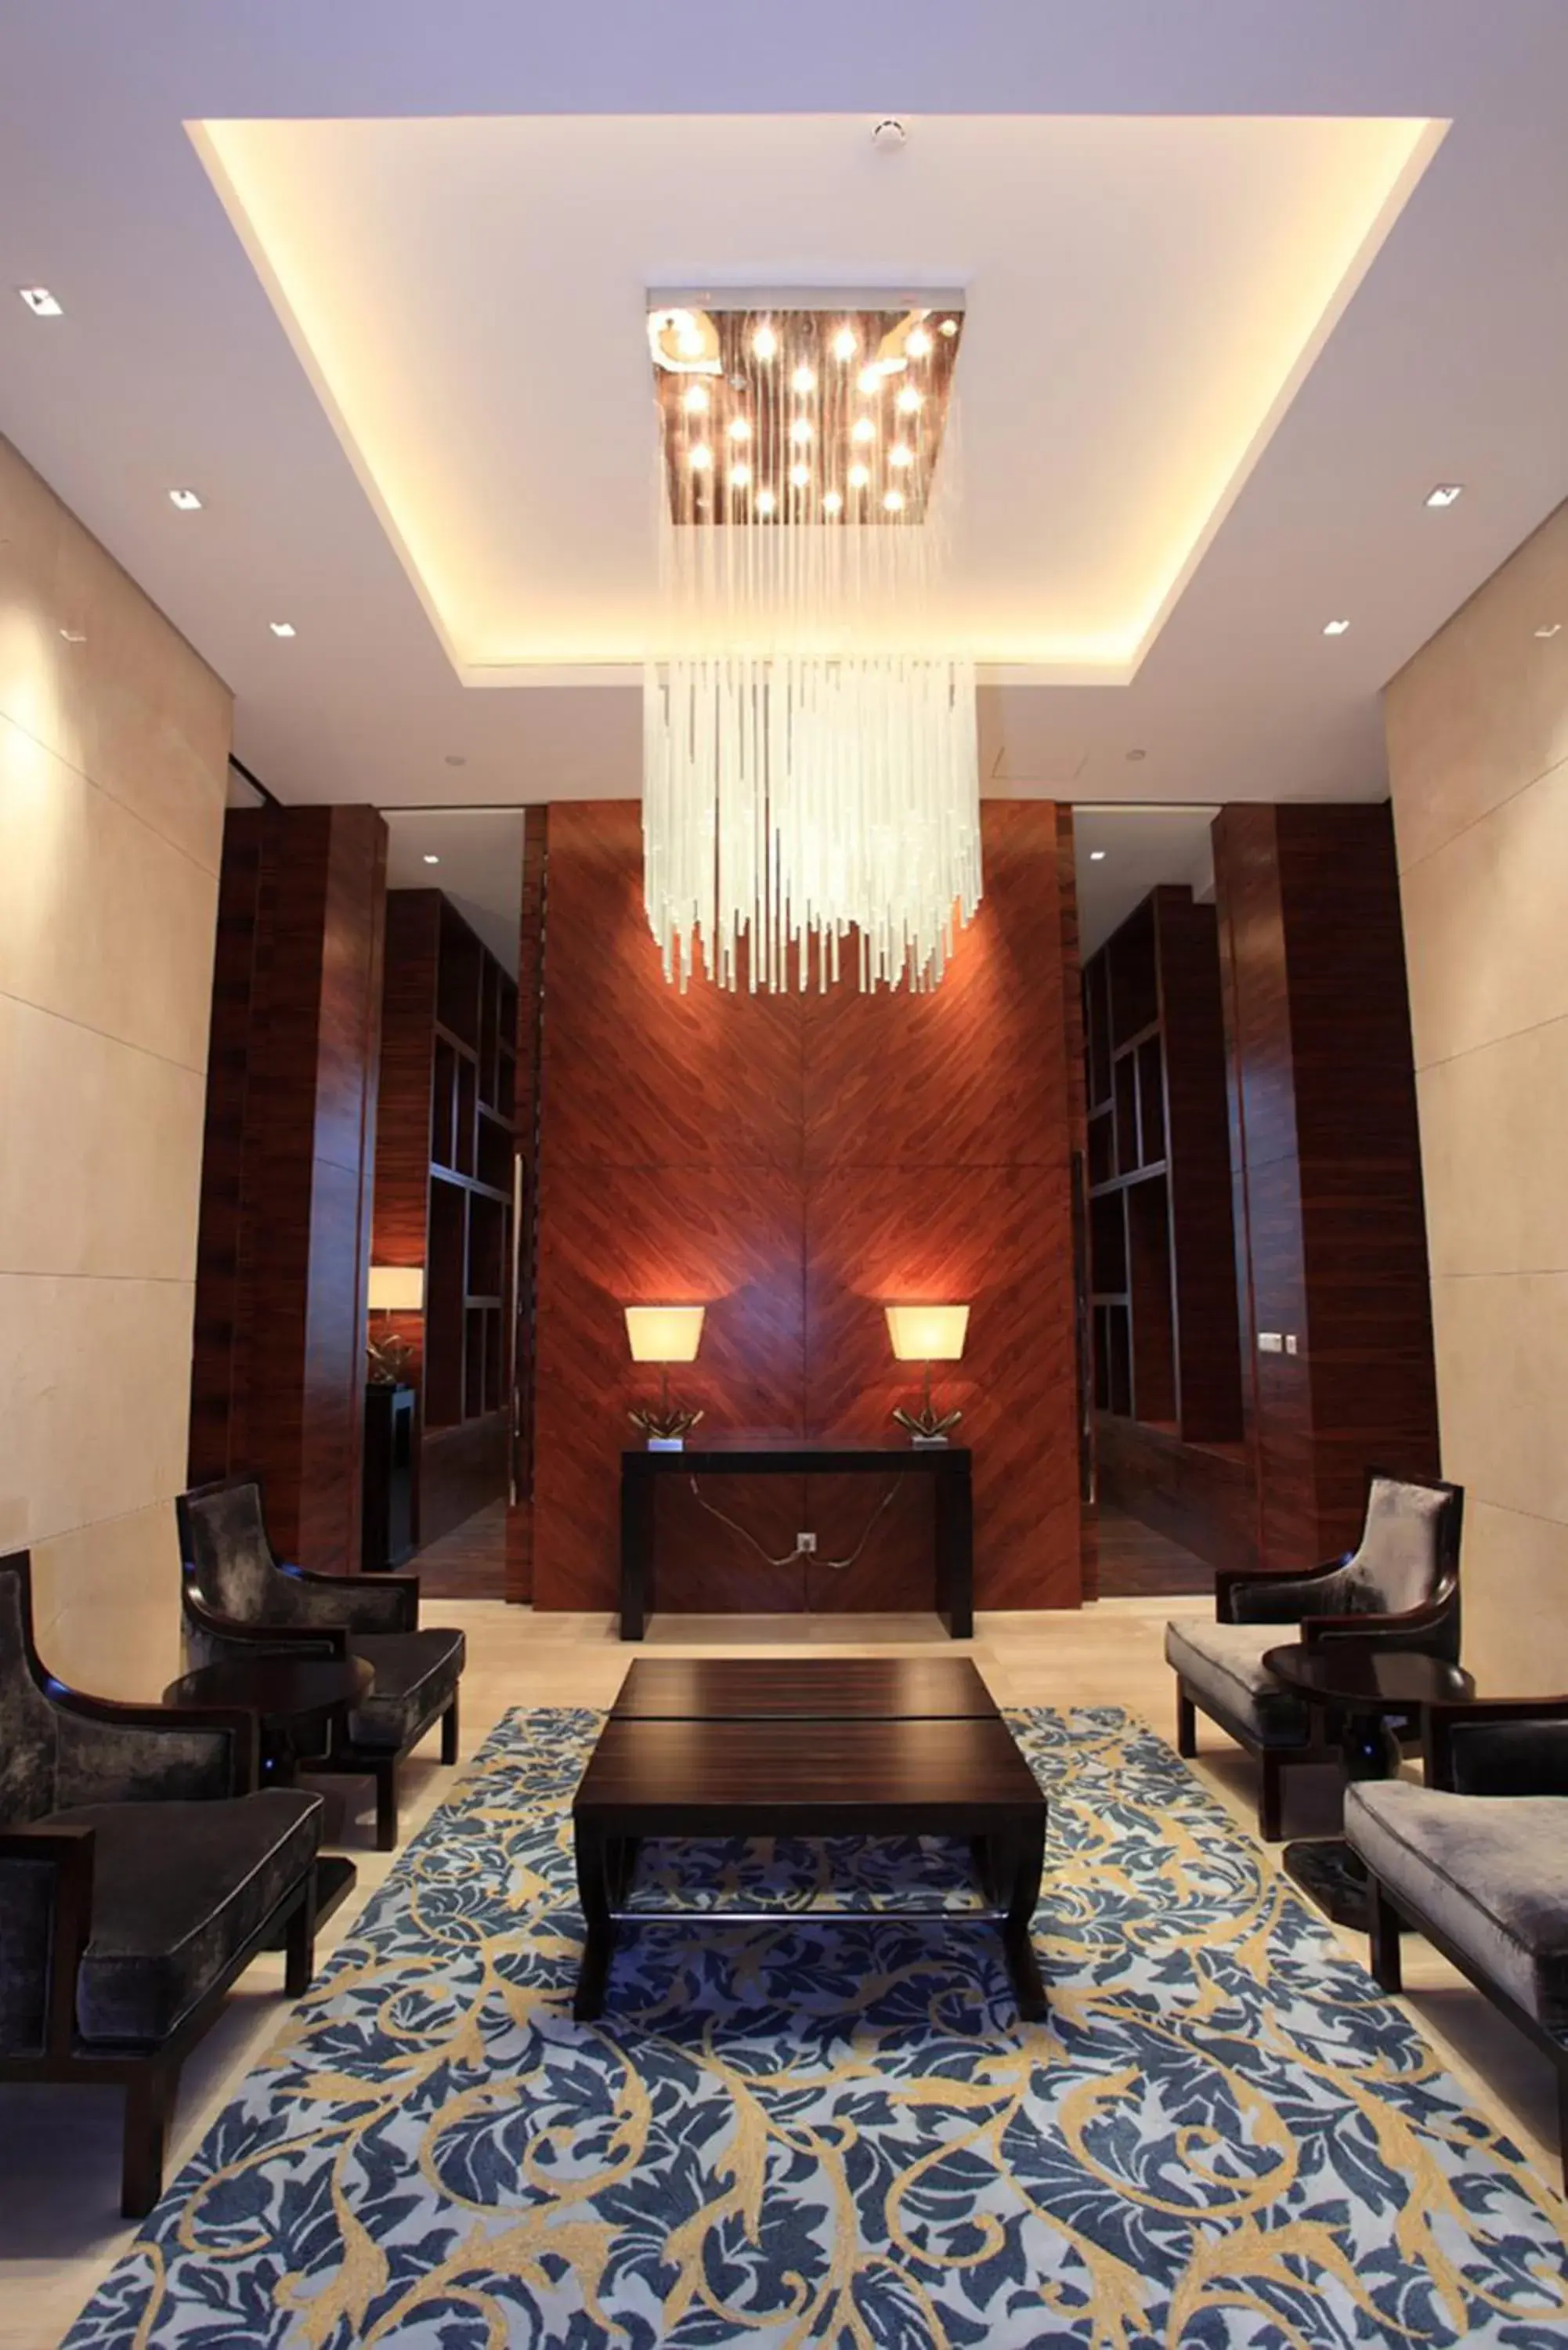 Lobby or reception, Lobby/Reception in HJ International Hotel